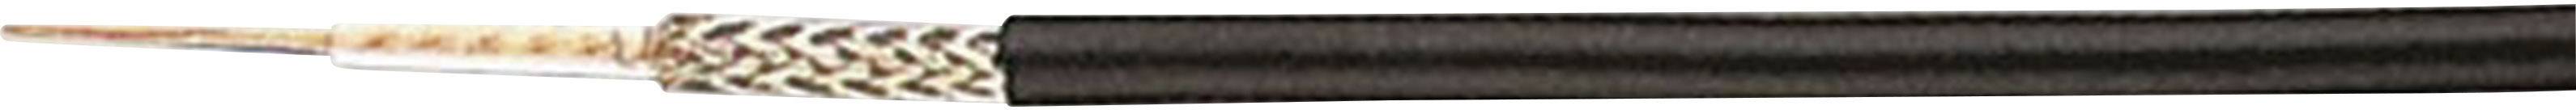 HELUKABEL Koaxialkabel Außen-Durchmesser: 2.80 mm RG174 A/U 50 ¿ Schwarz Helukabel 40197 Meterware